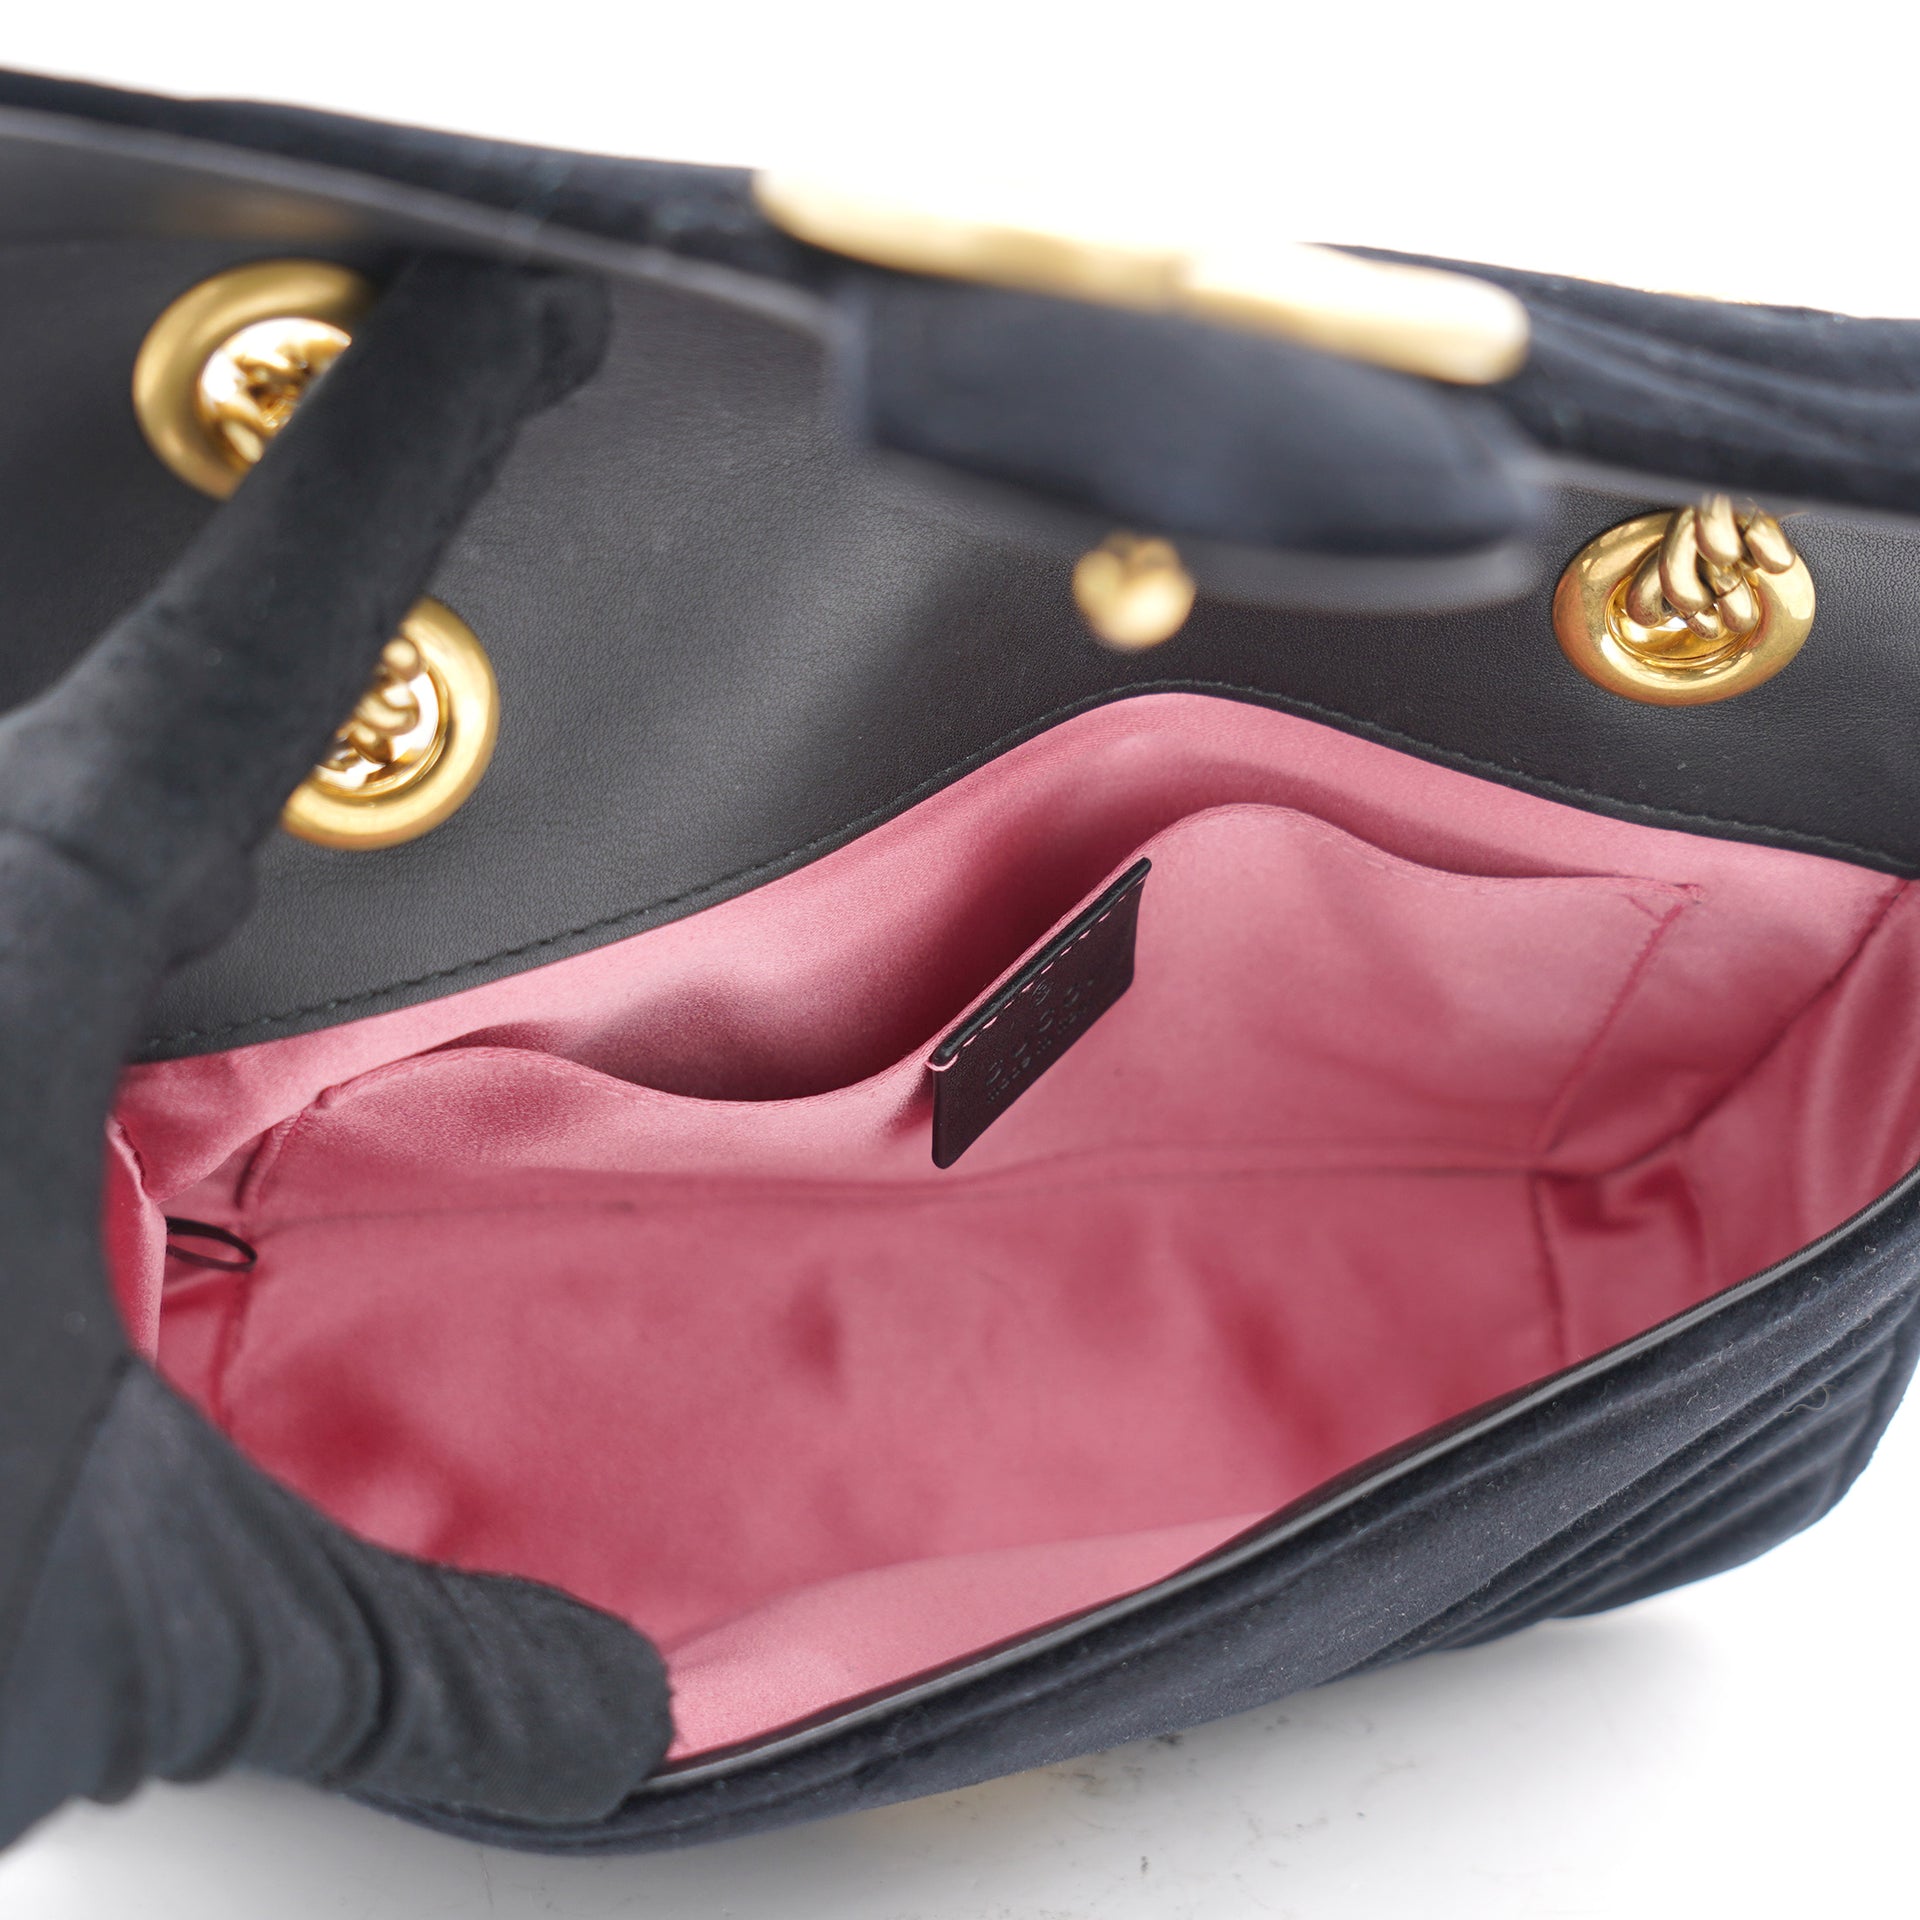 Velvet Matelasse Mini GG Marmont Shoulder Bag Black